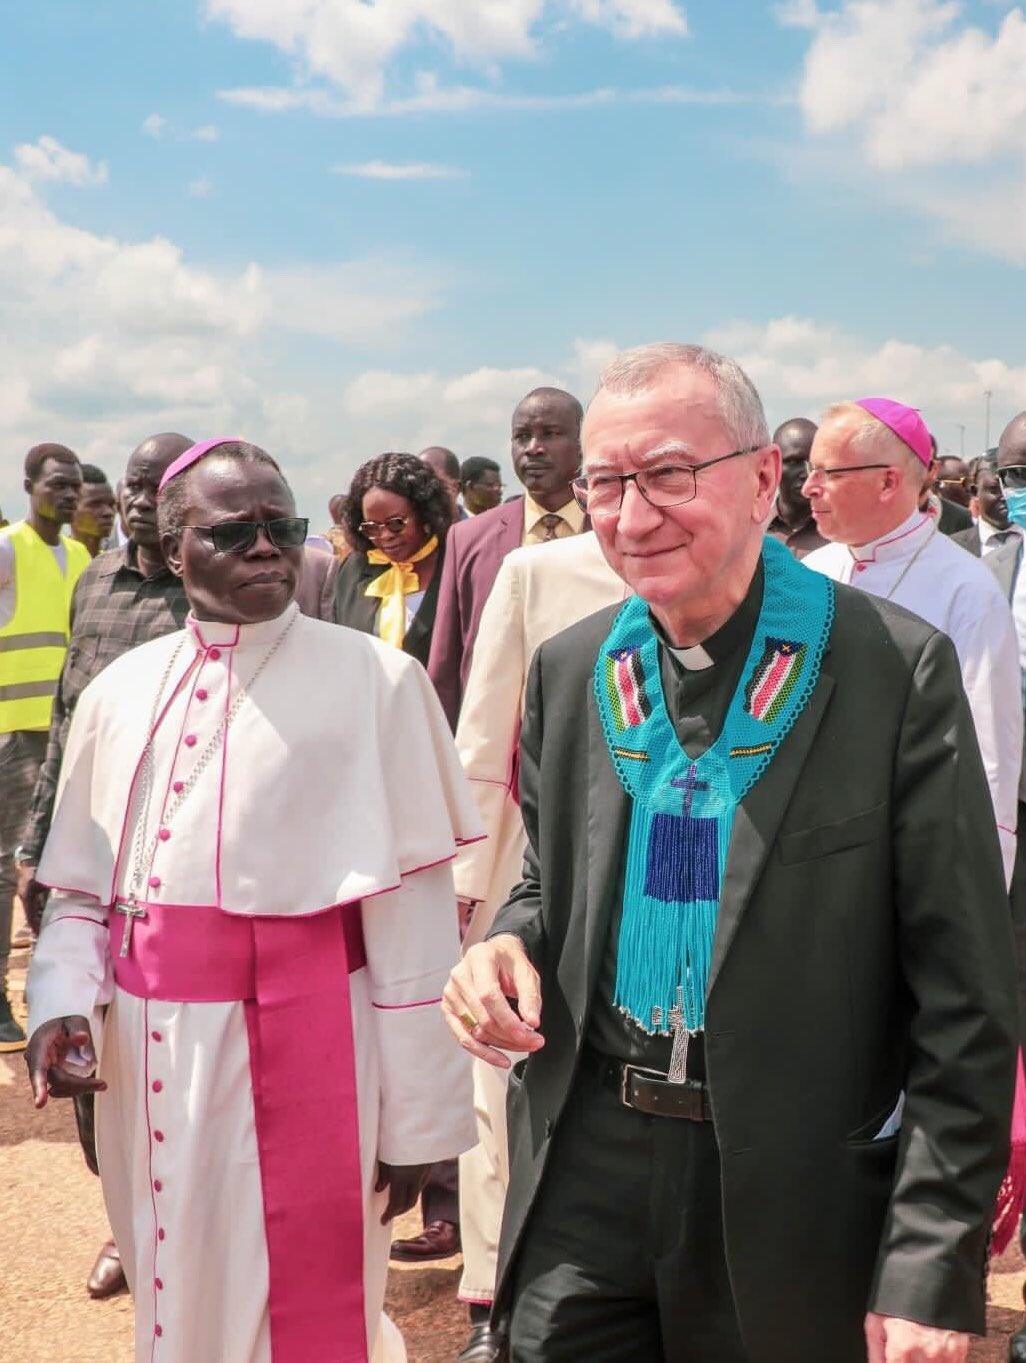 Soudan du Sud: arrivée du cardinal Parolin à Juba